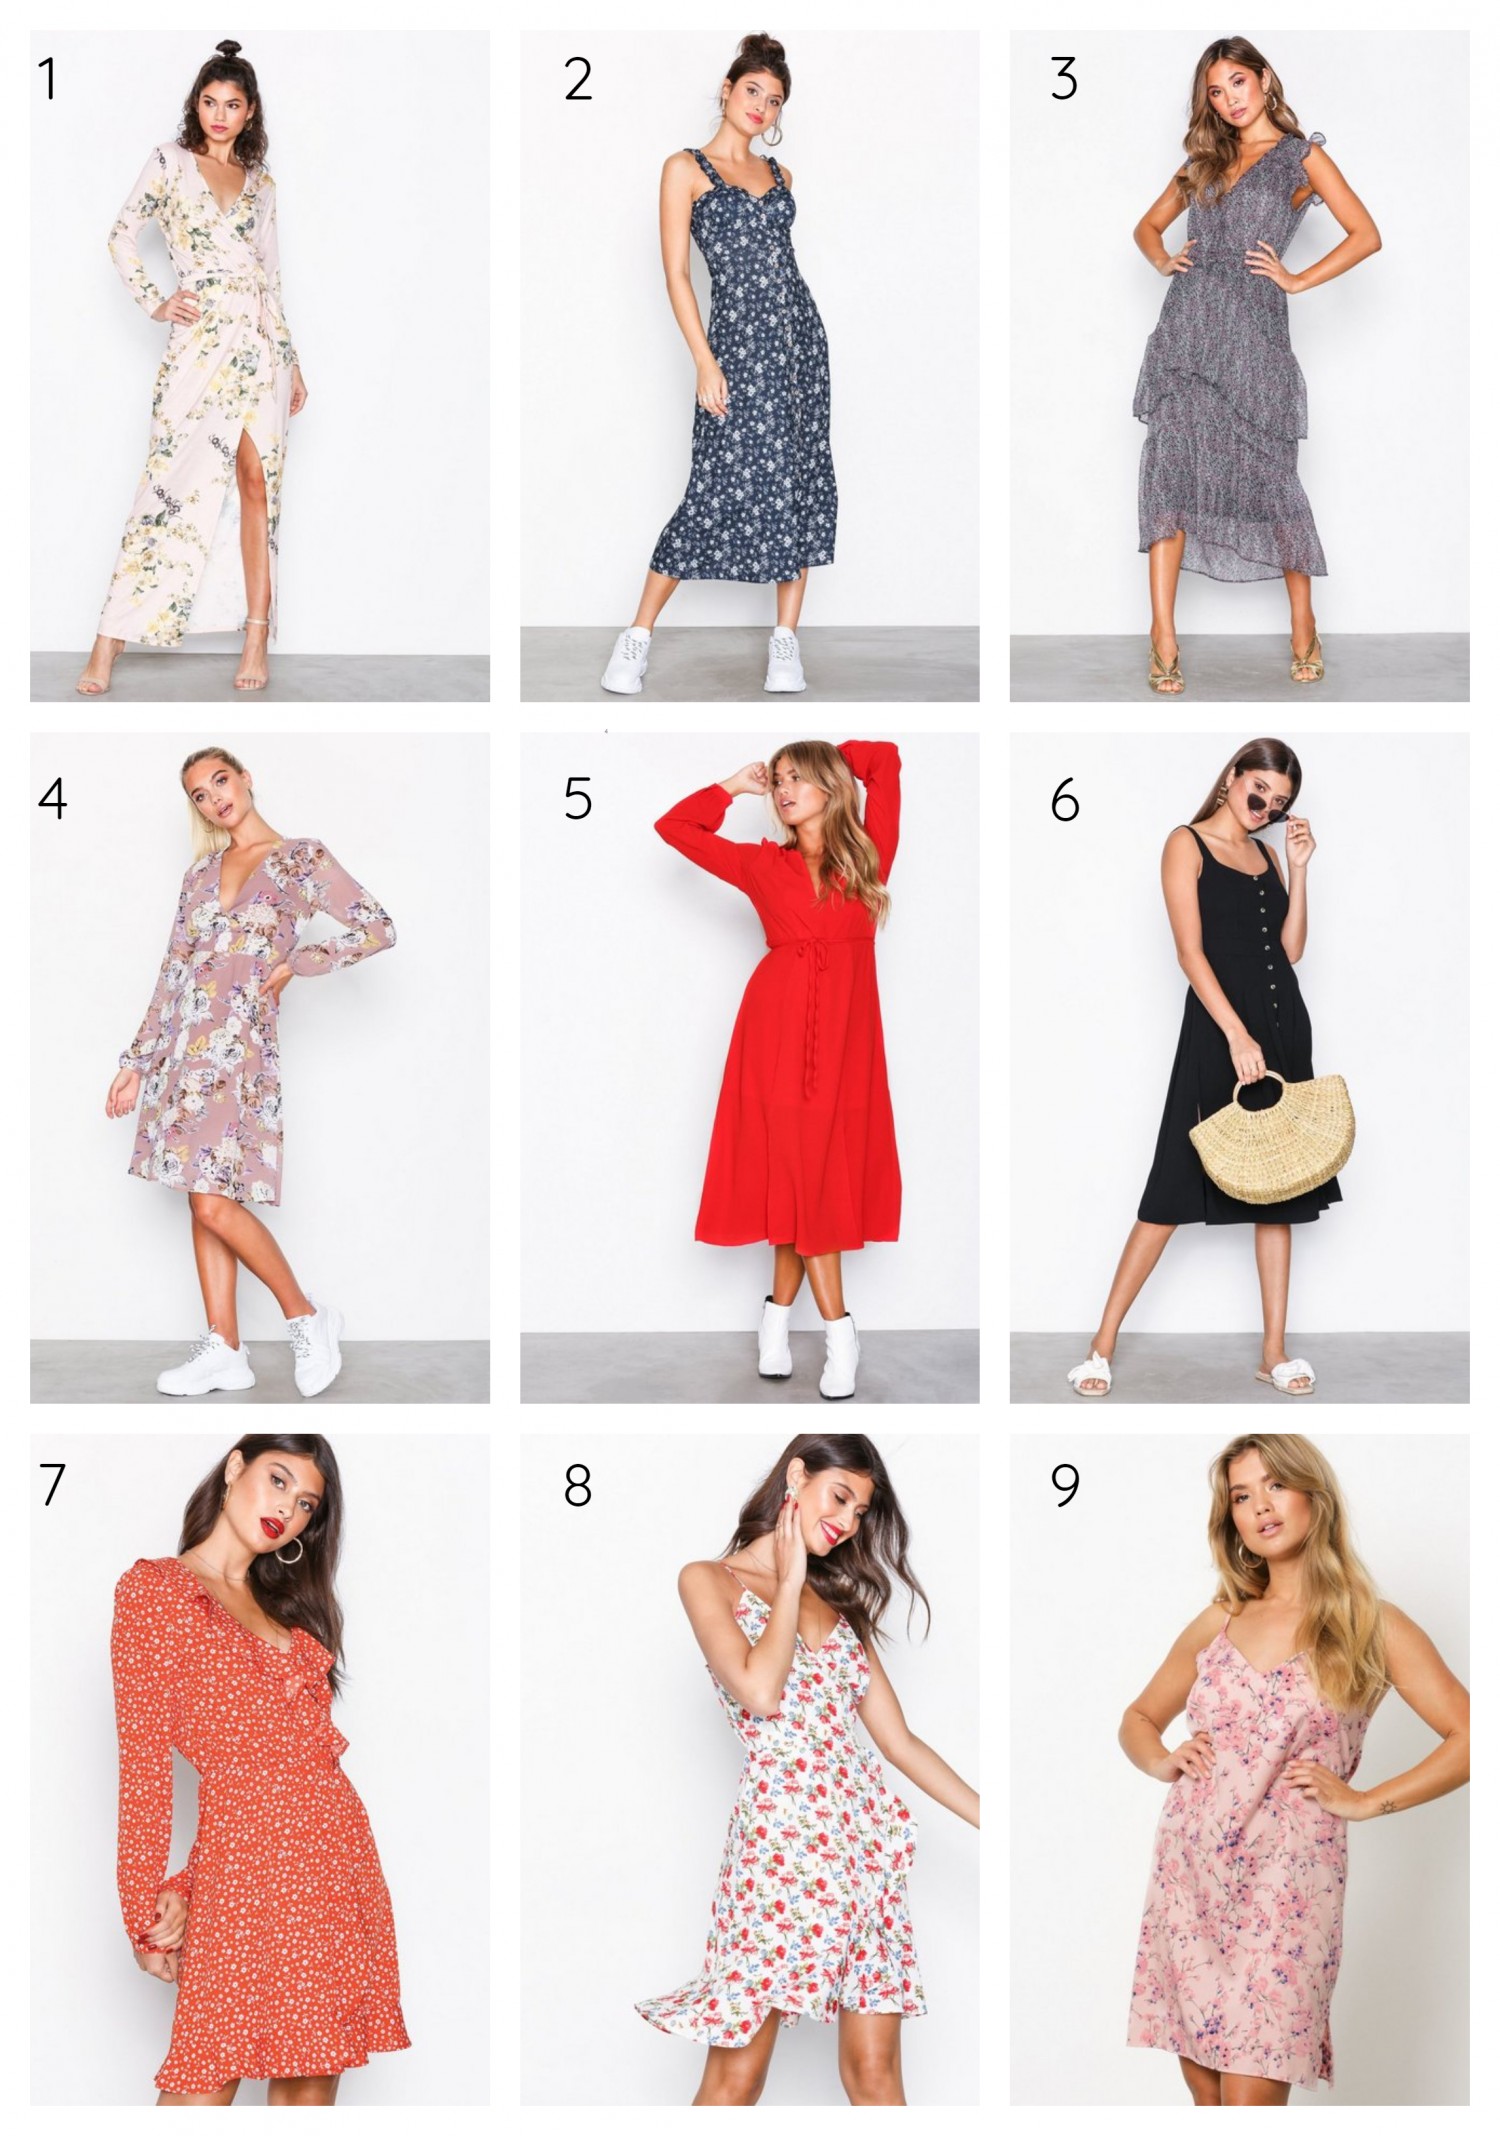 Søde kjoler til sommervarmen | Mode | Damsfeld